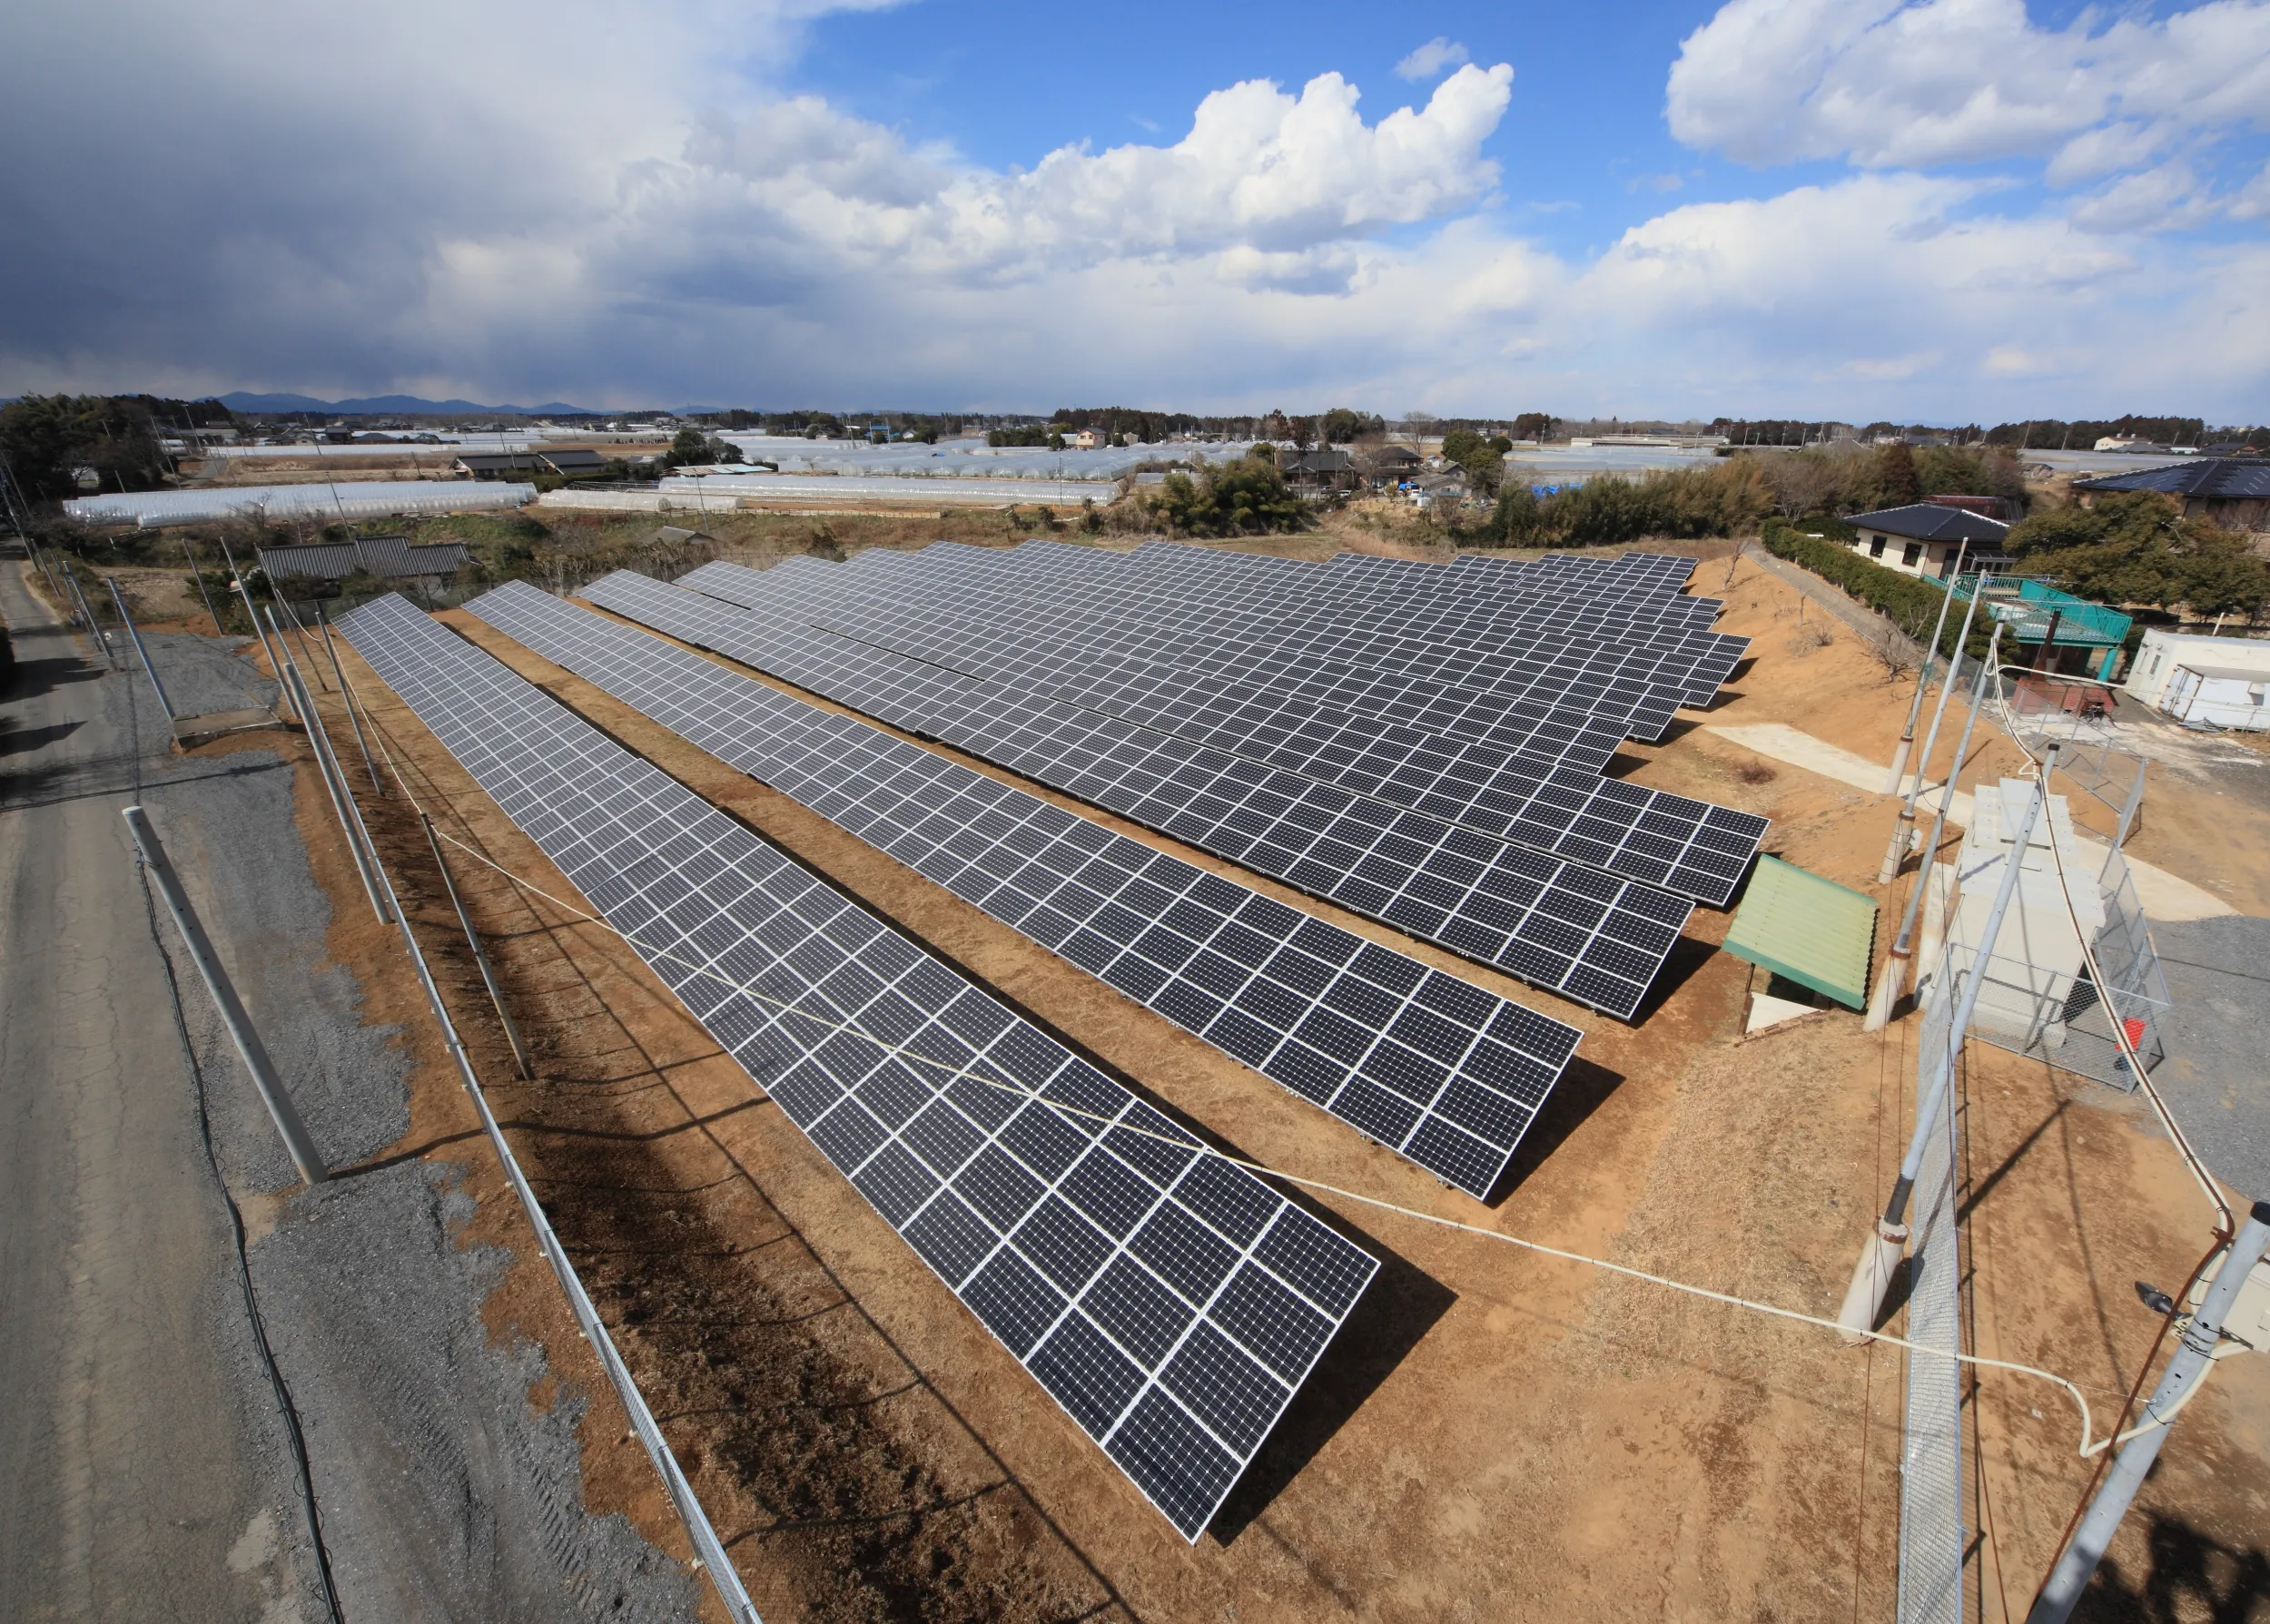 村田基礎工事太陽光発電施設建設工事のサムネイル画像です